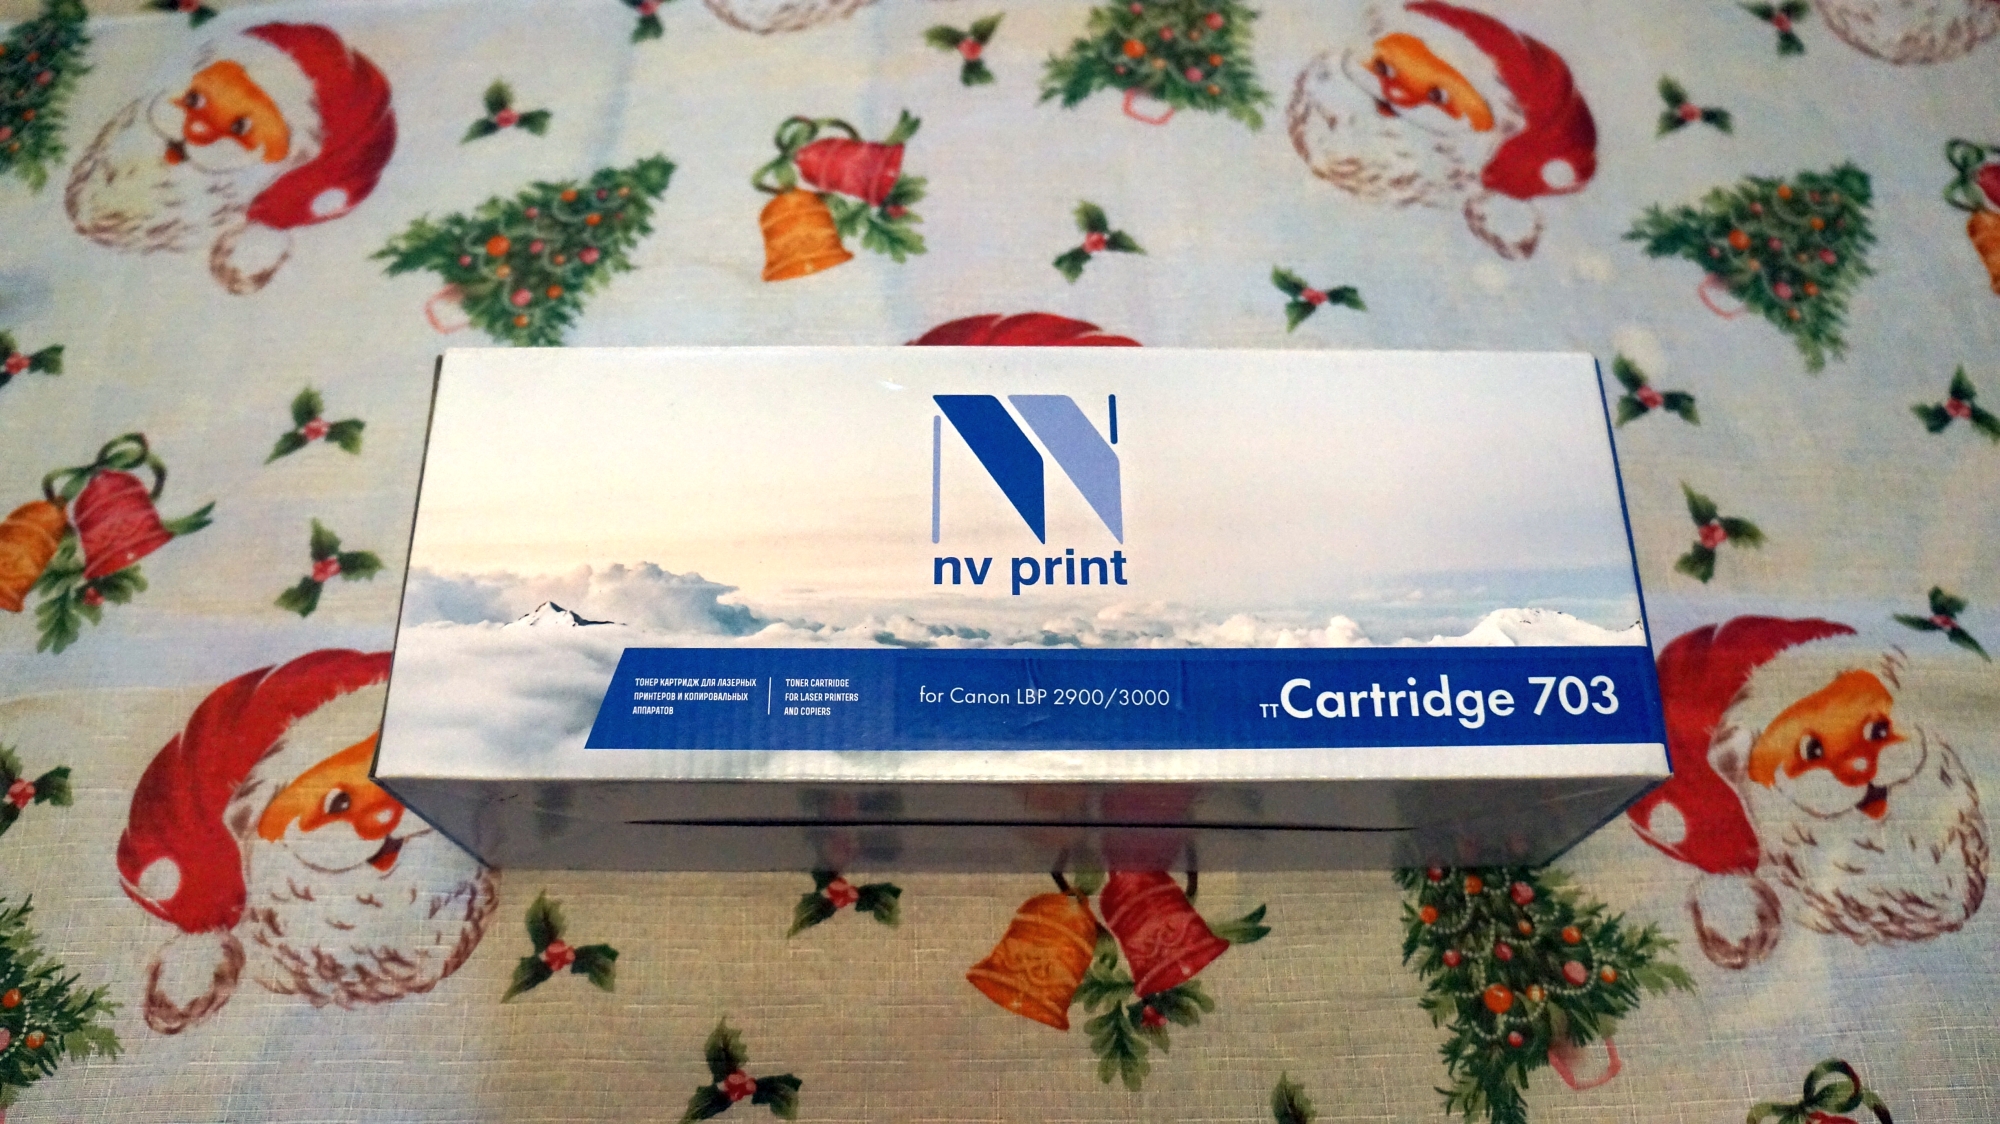 Картридж NV Print 703 внешний вид упаковки